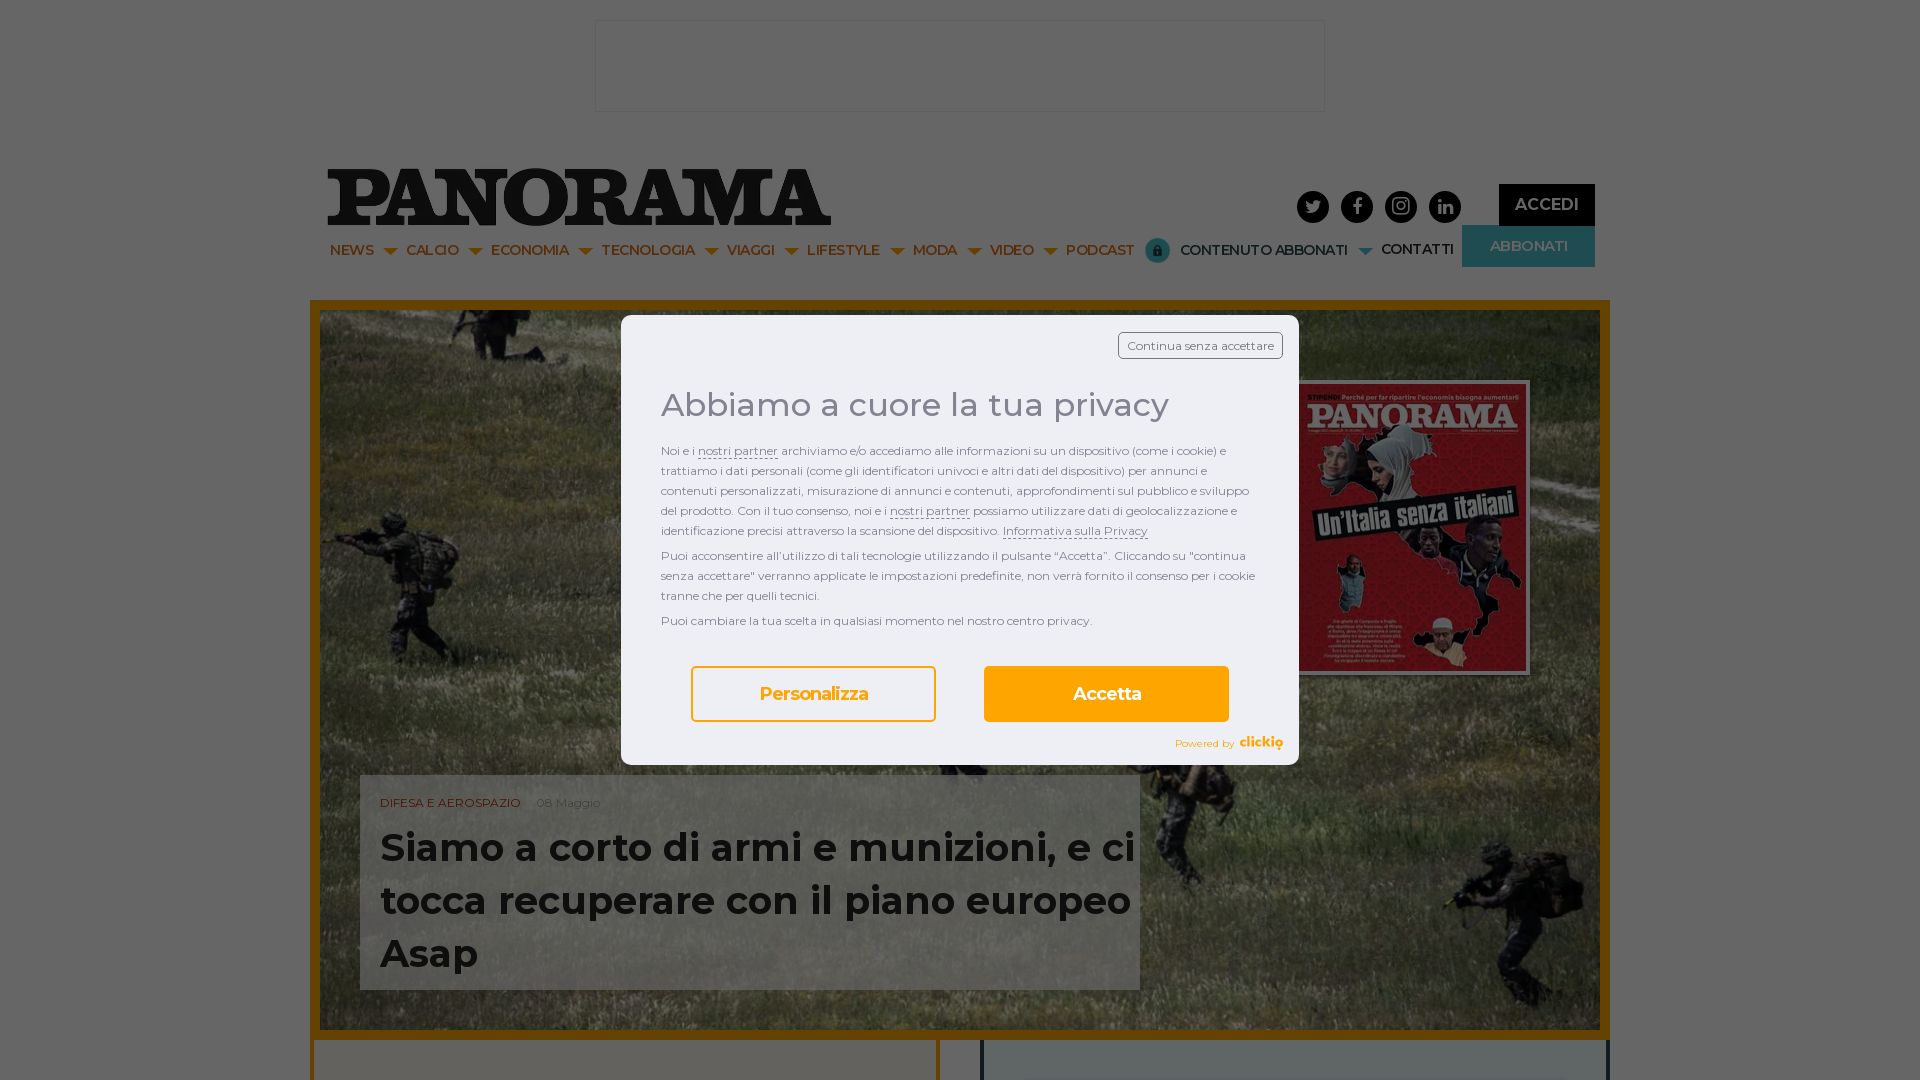 Estado web panorama.it está   ONLINE